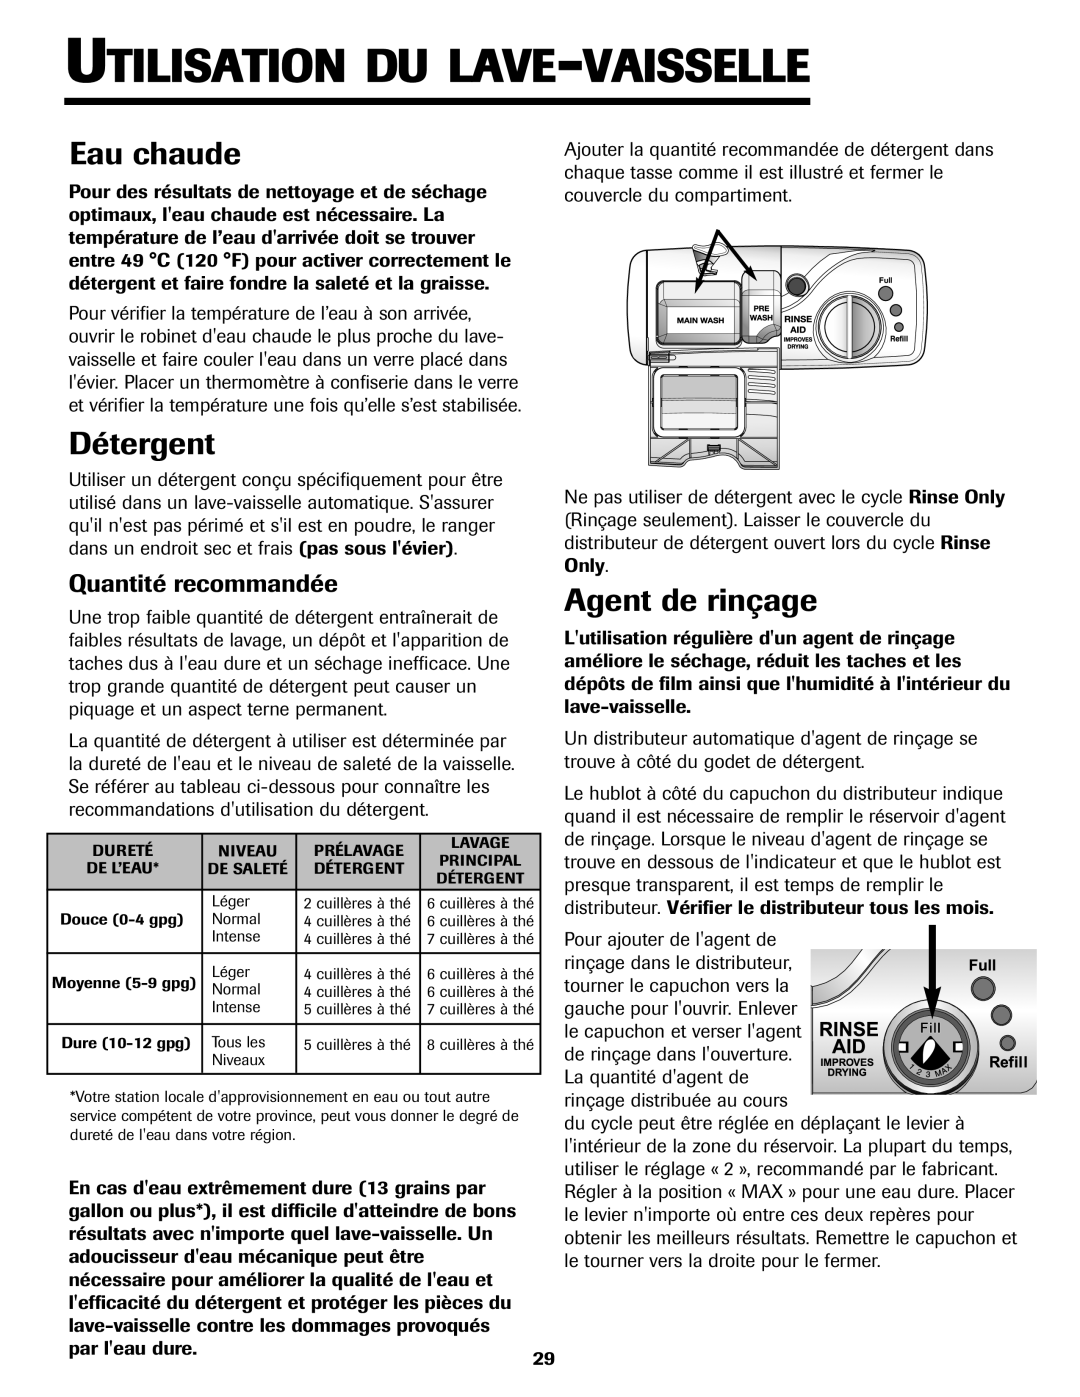 Jenn-Air JDB-5 warranty Utilisation Du Lave-Vaisselle, Eau chaude, Détergent, Agent de rinçage, Quantité recommandée 